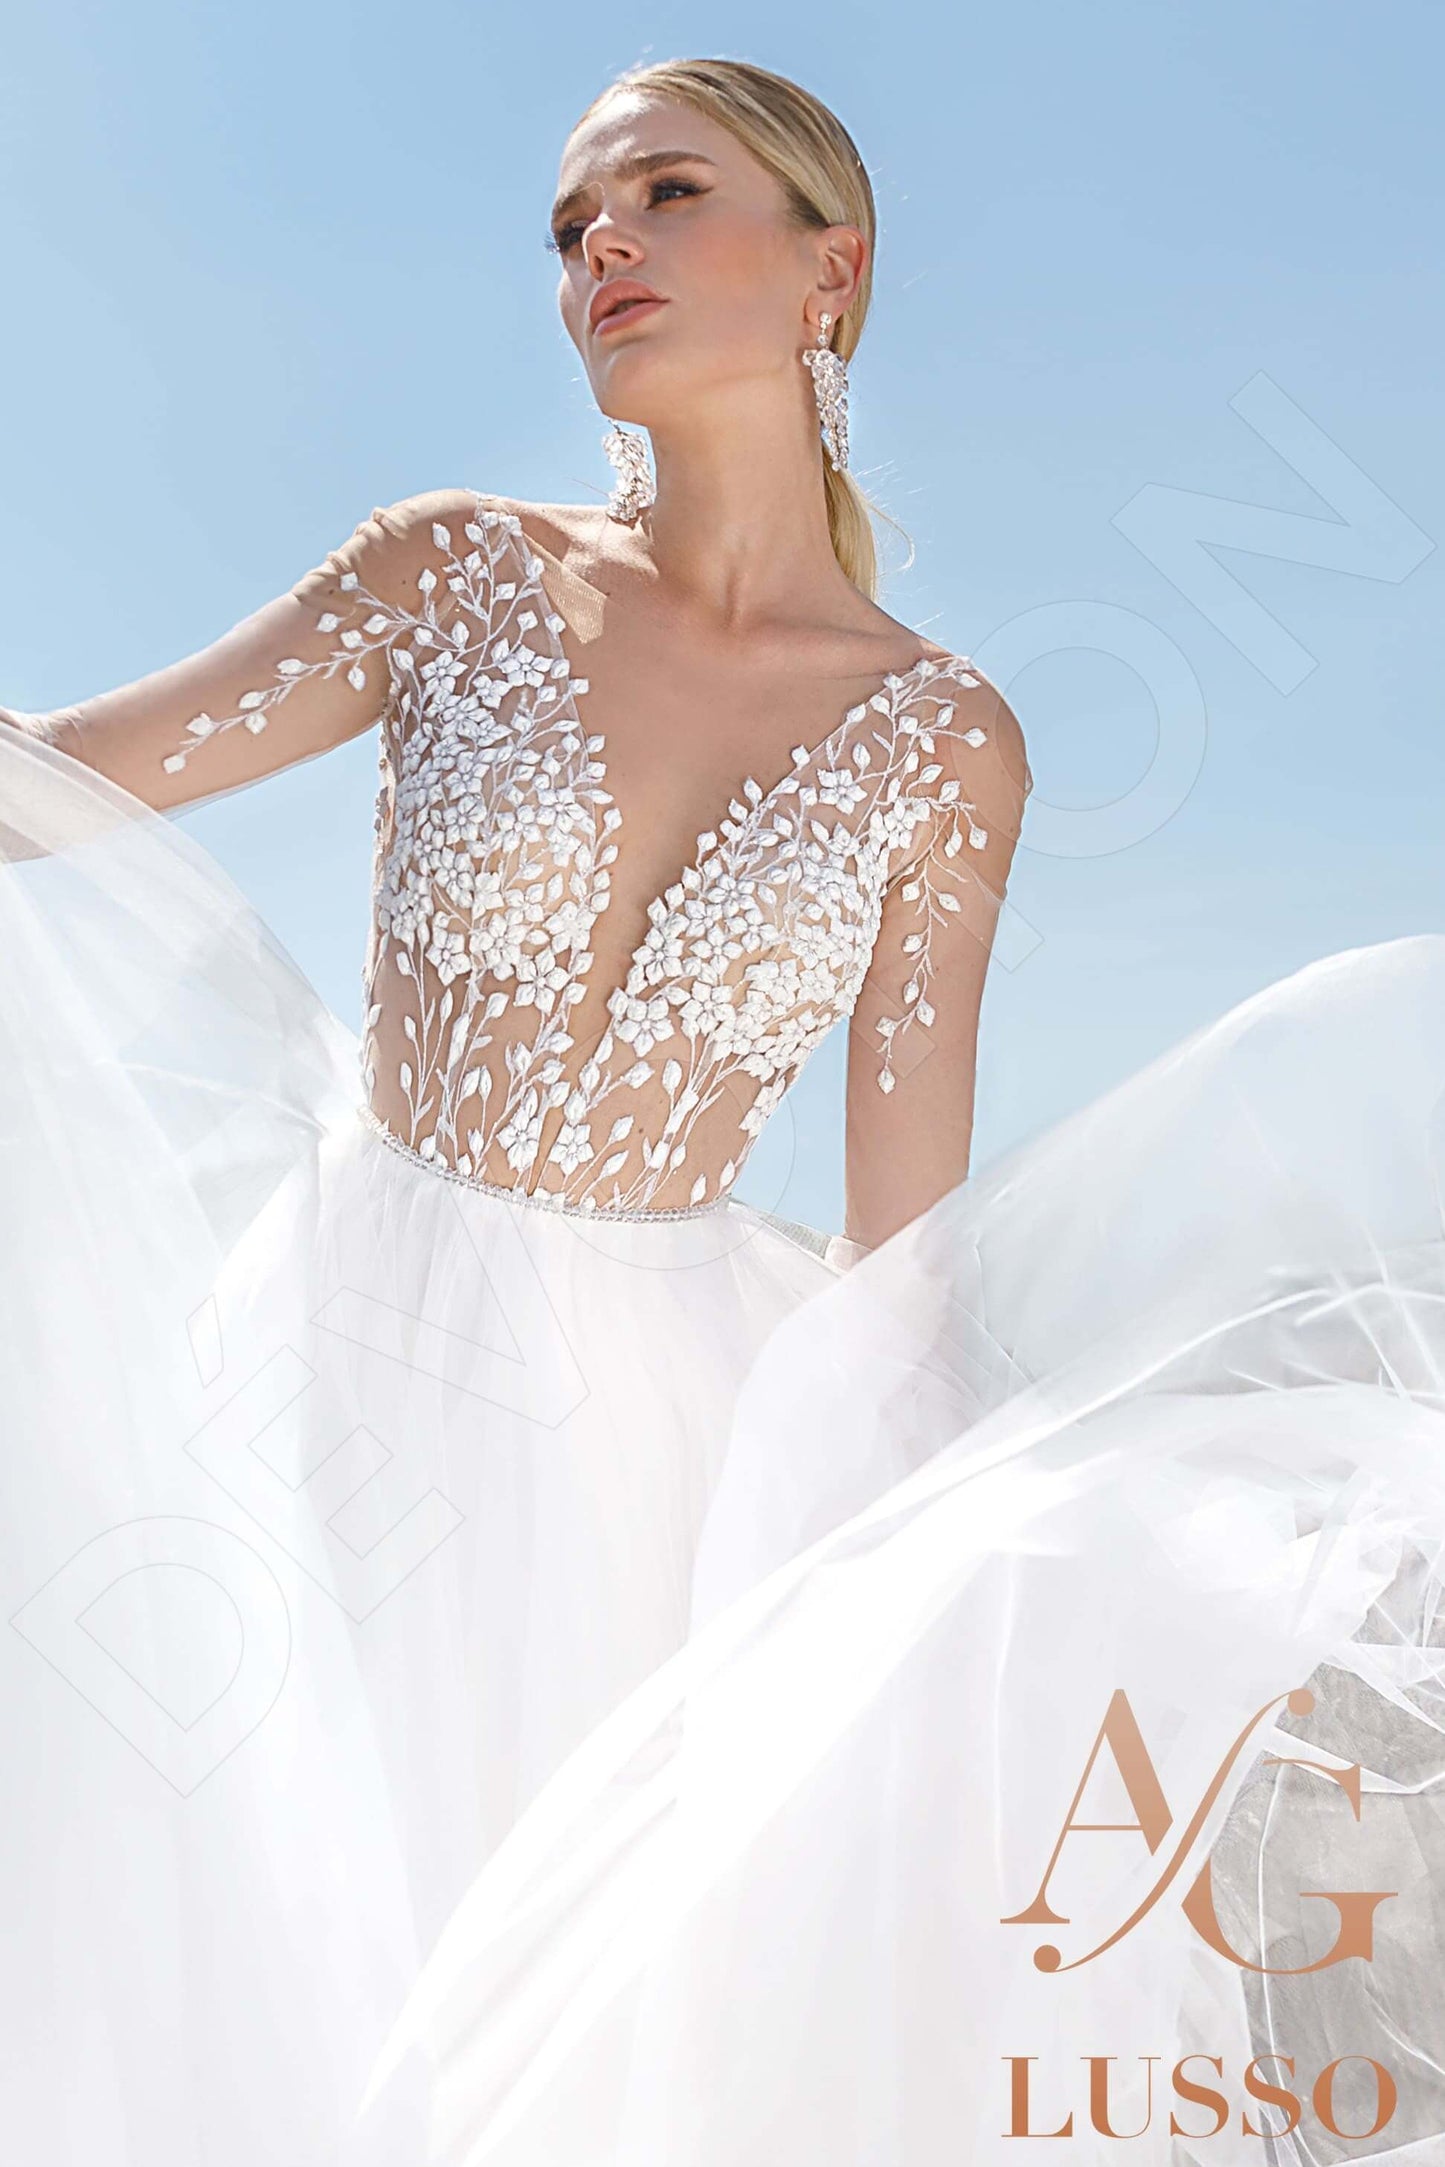 Aubrey Open back A-line Long sleeve Wedding Dress 5